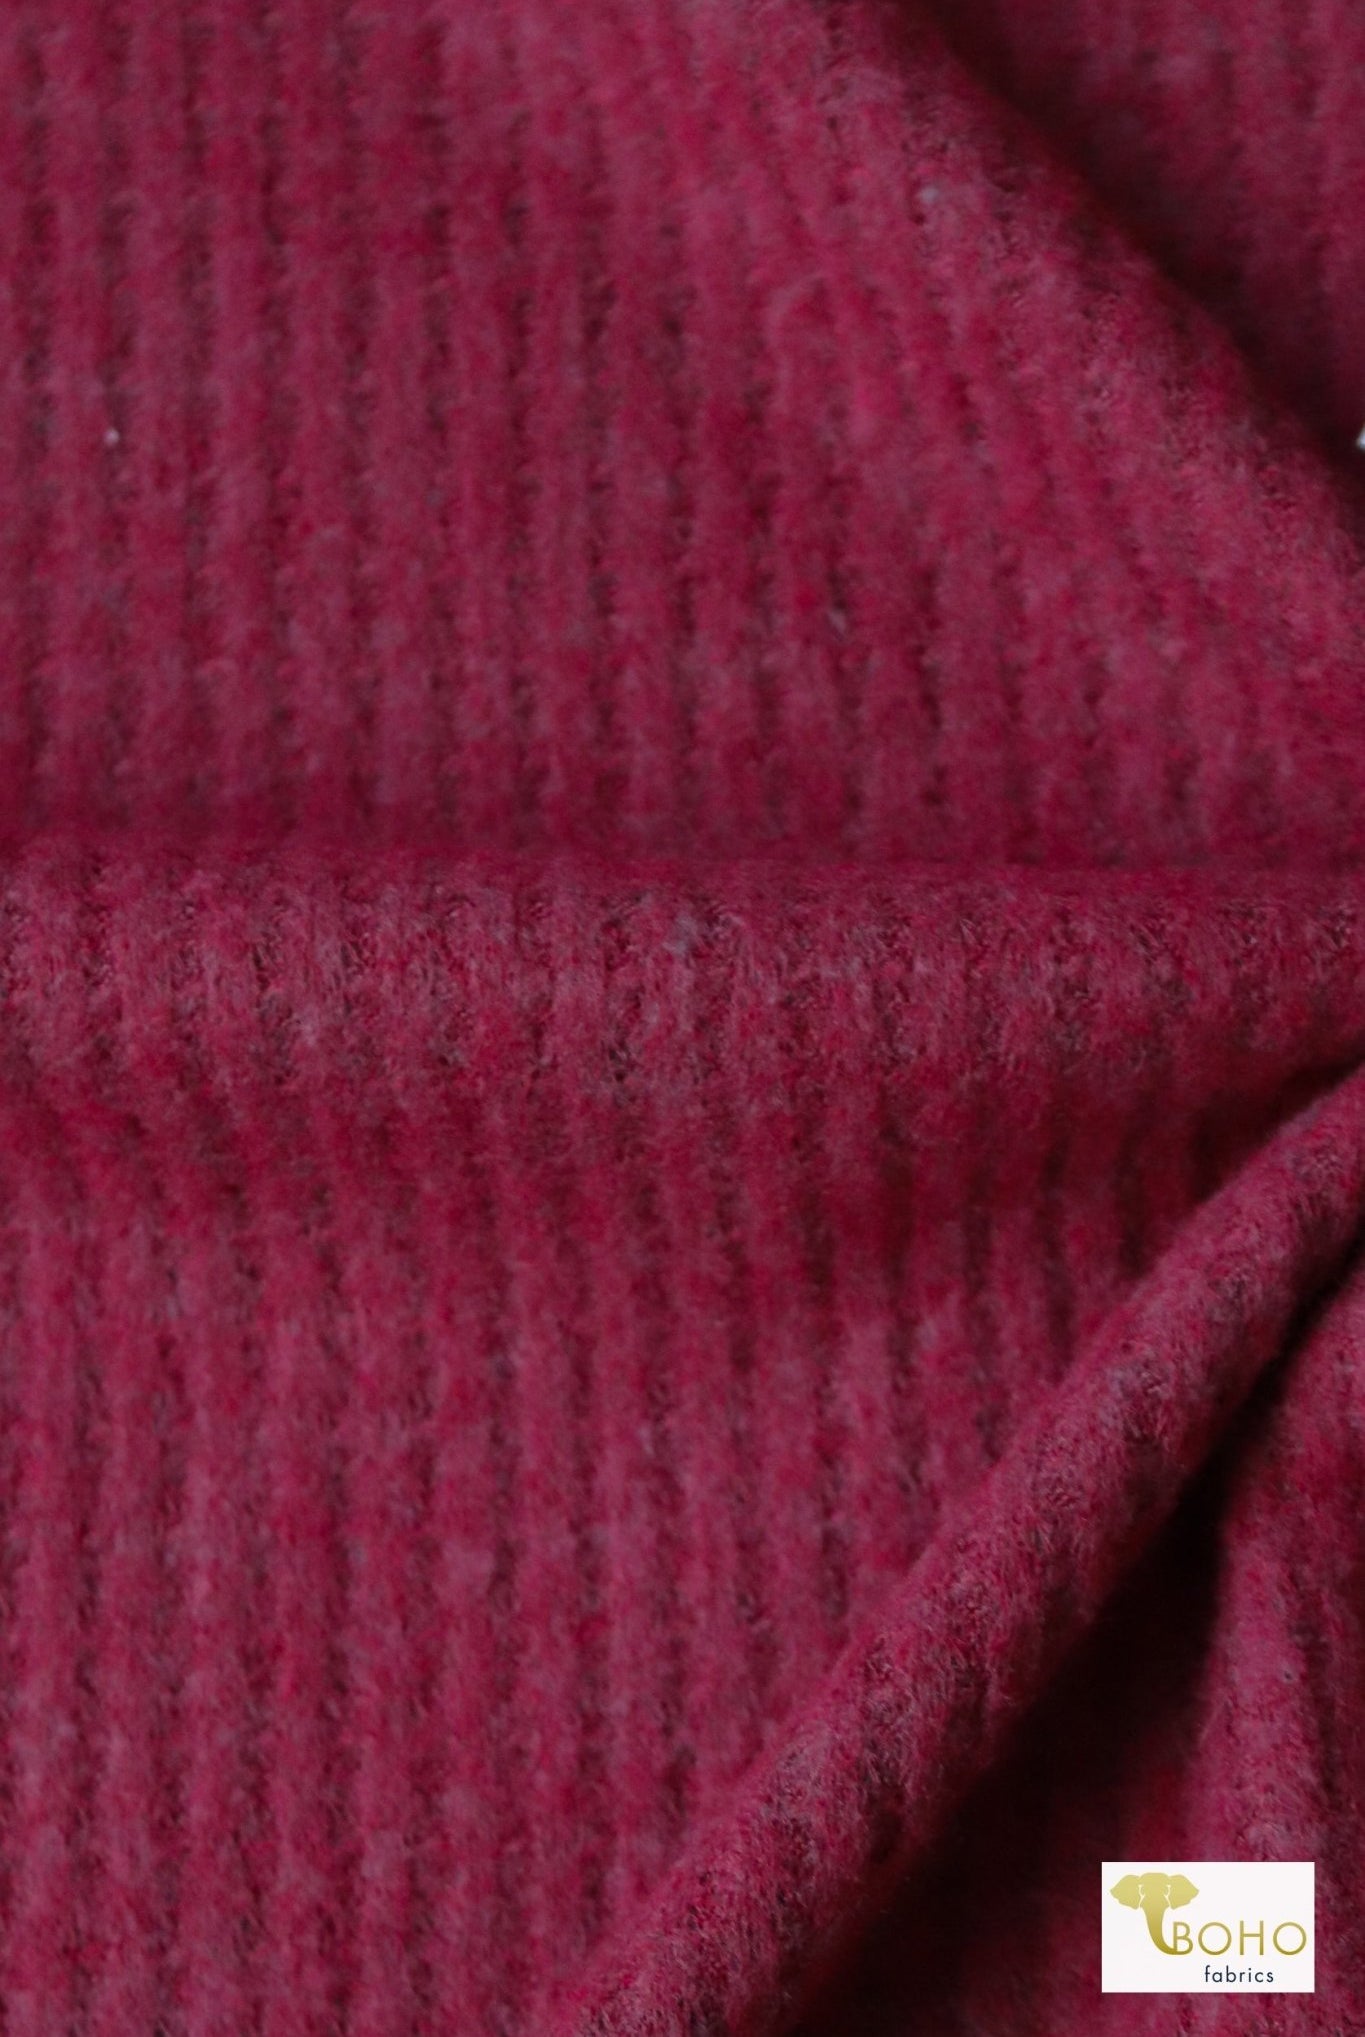 Wineberry Red, Brushed Waffle Knit - Boho Fabrics